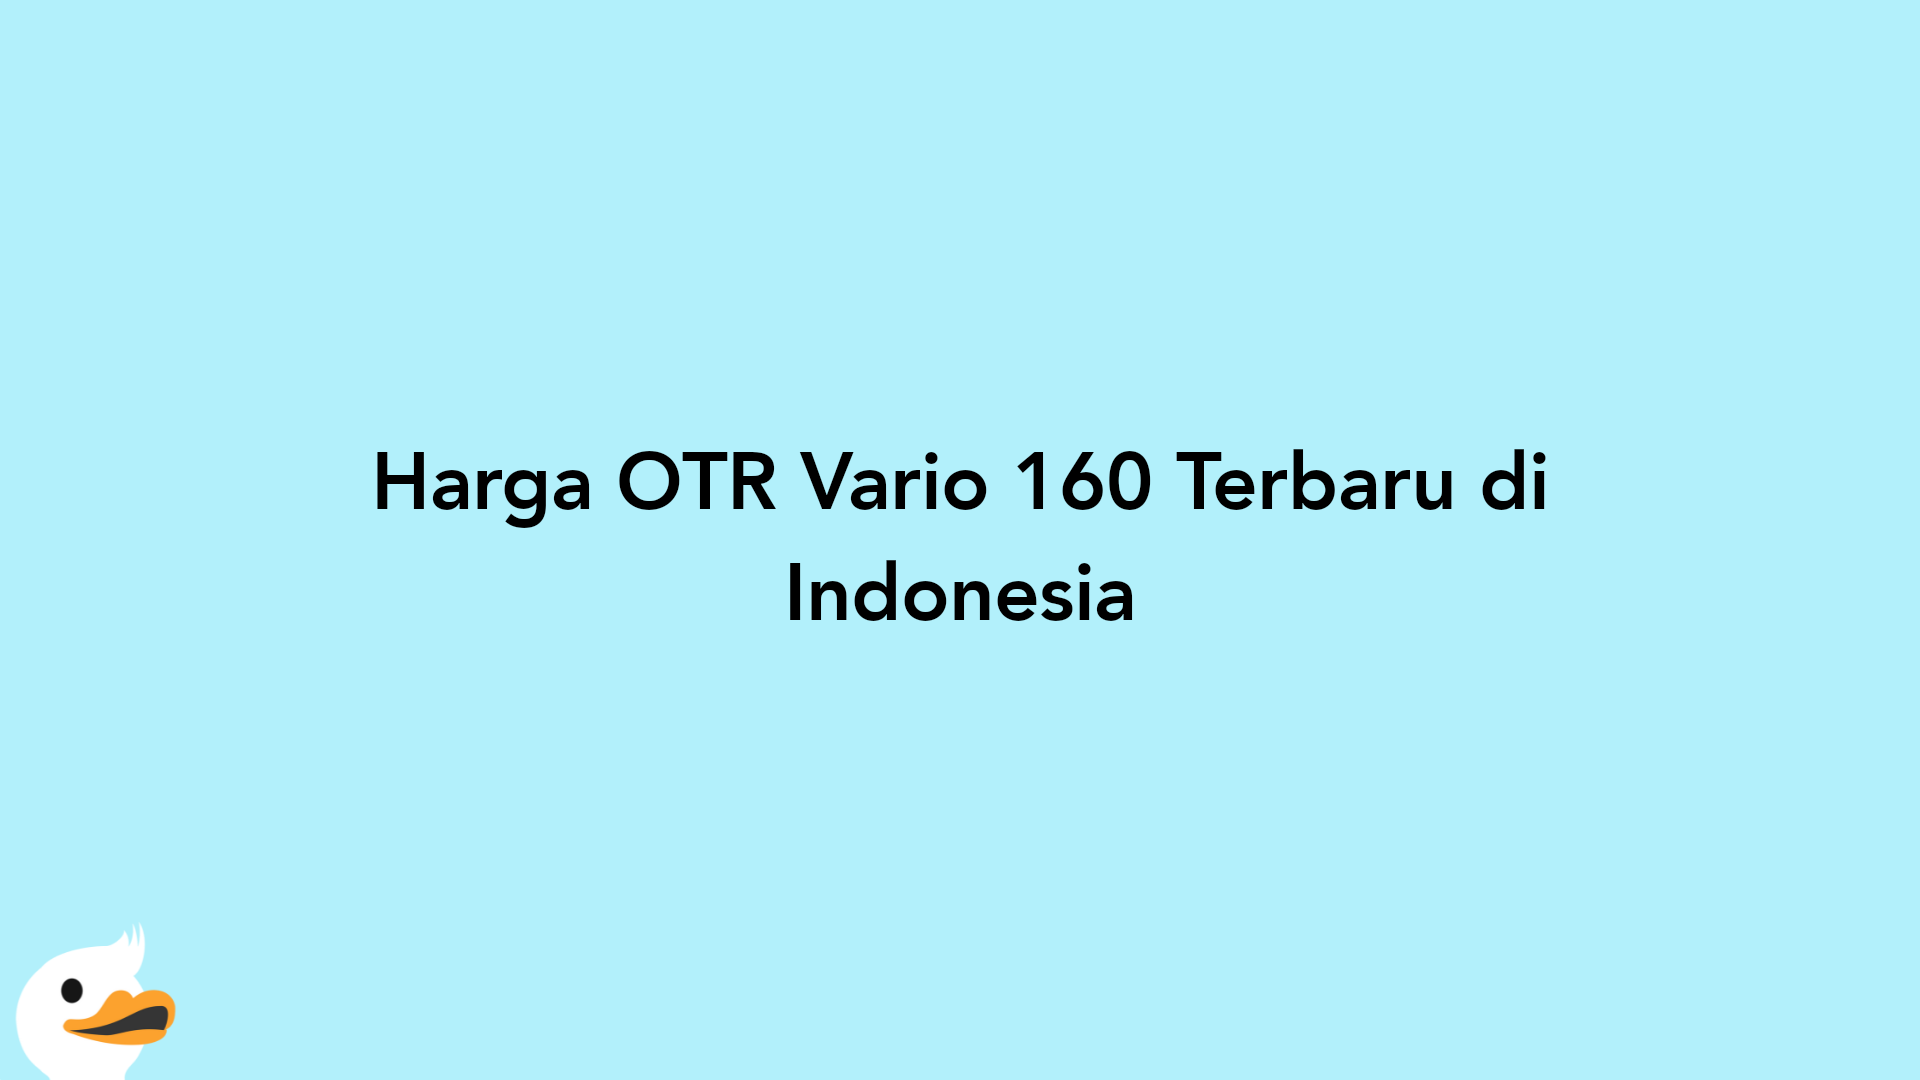 Harga OTR Vario 160 Terbaru di Indonesia